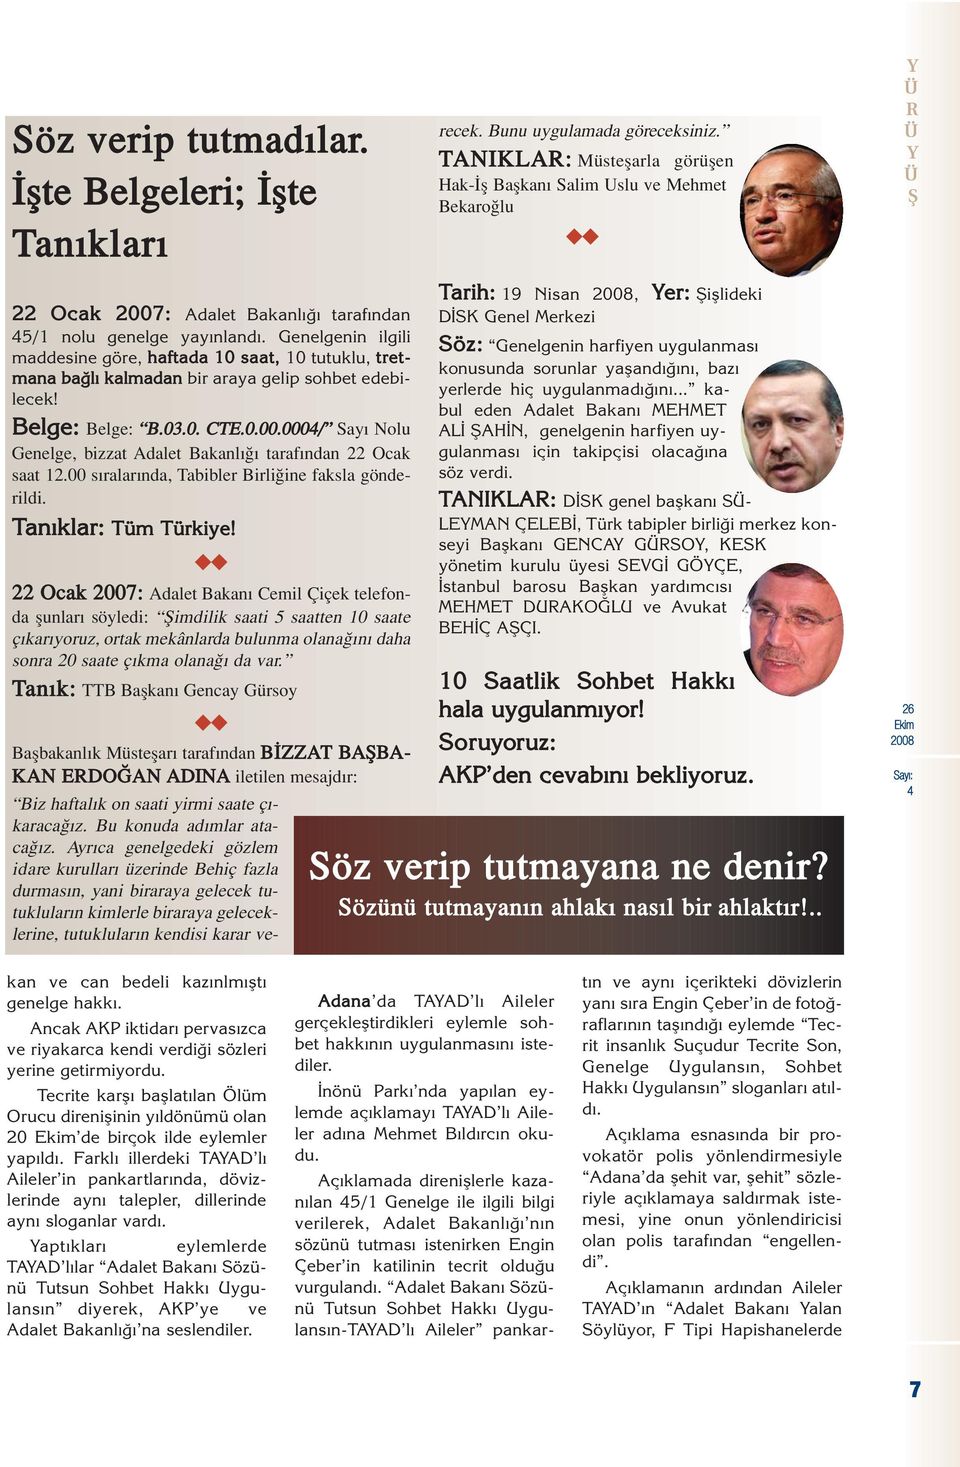 Bunu uygulamada göreceksiniz. TANIKLA: Müsteflarla görüflen Hak- fl Baflkan Salim Uslu ve Mehmet Bekaro lu uu 22 Ocak 2007: Adalet Bakanl taraf ndan 5/1 nolu genelge yay nland.